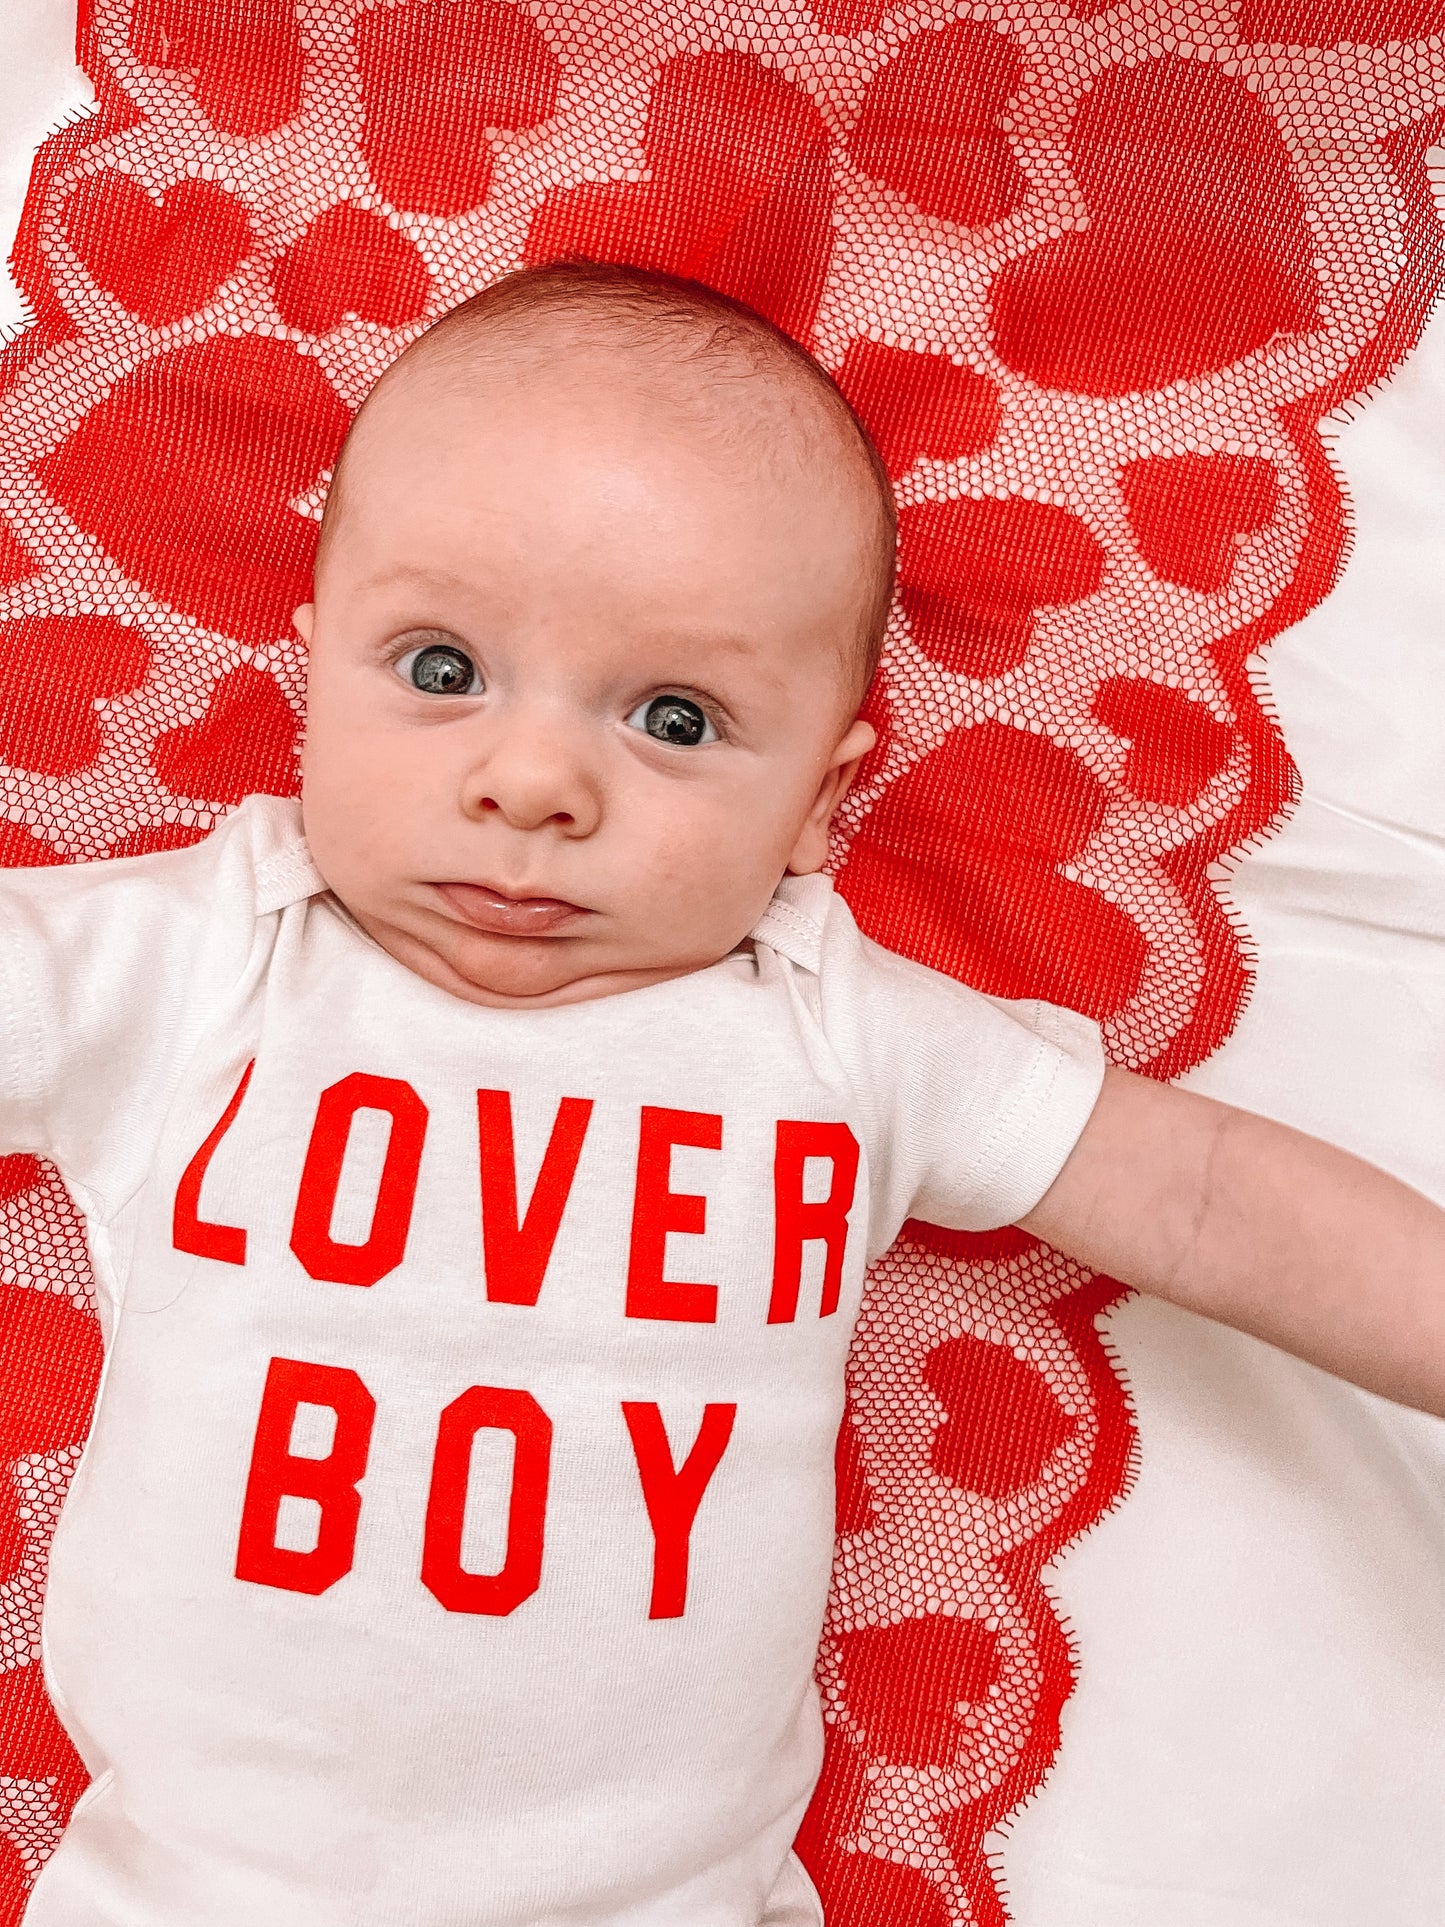 Lover Boy (Red) - Bodysuit (White, Short Sleeve)